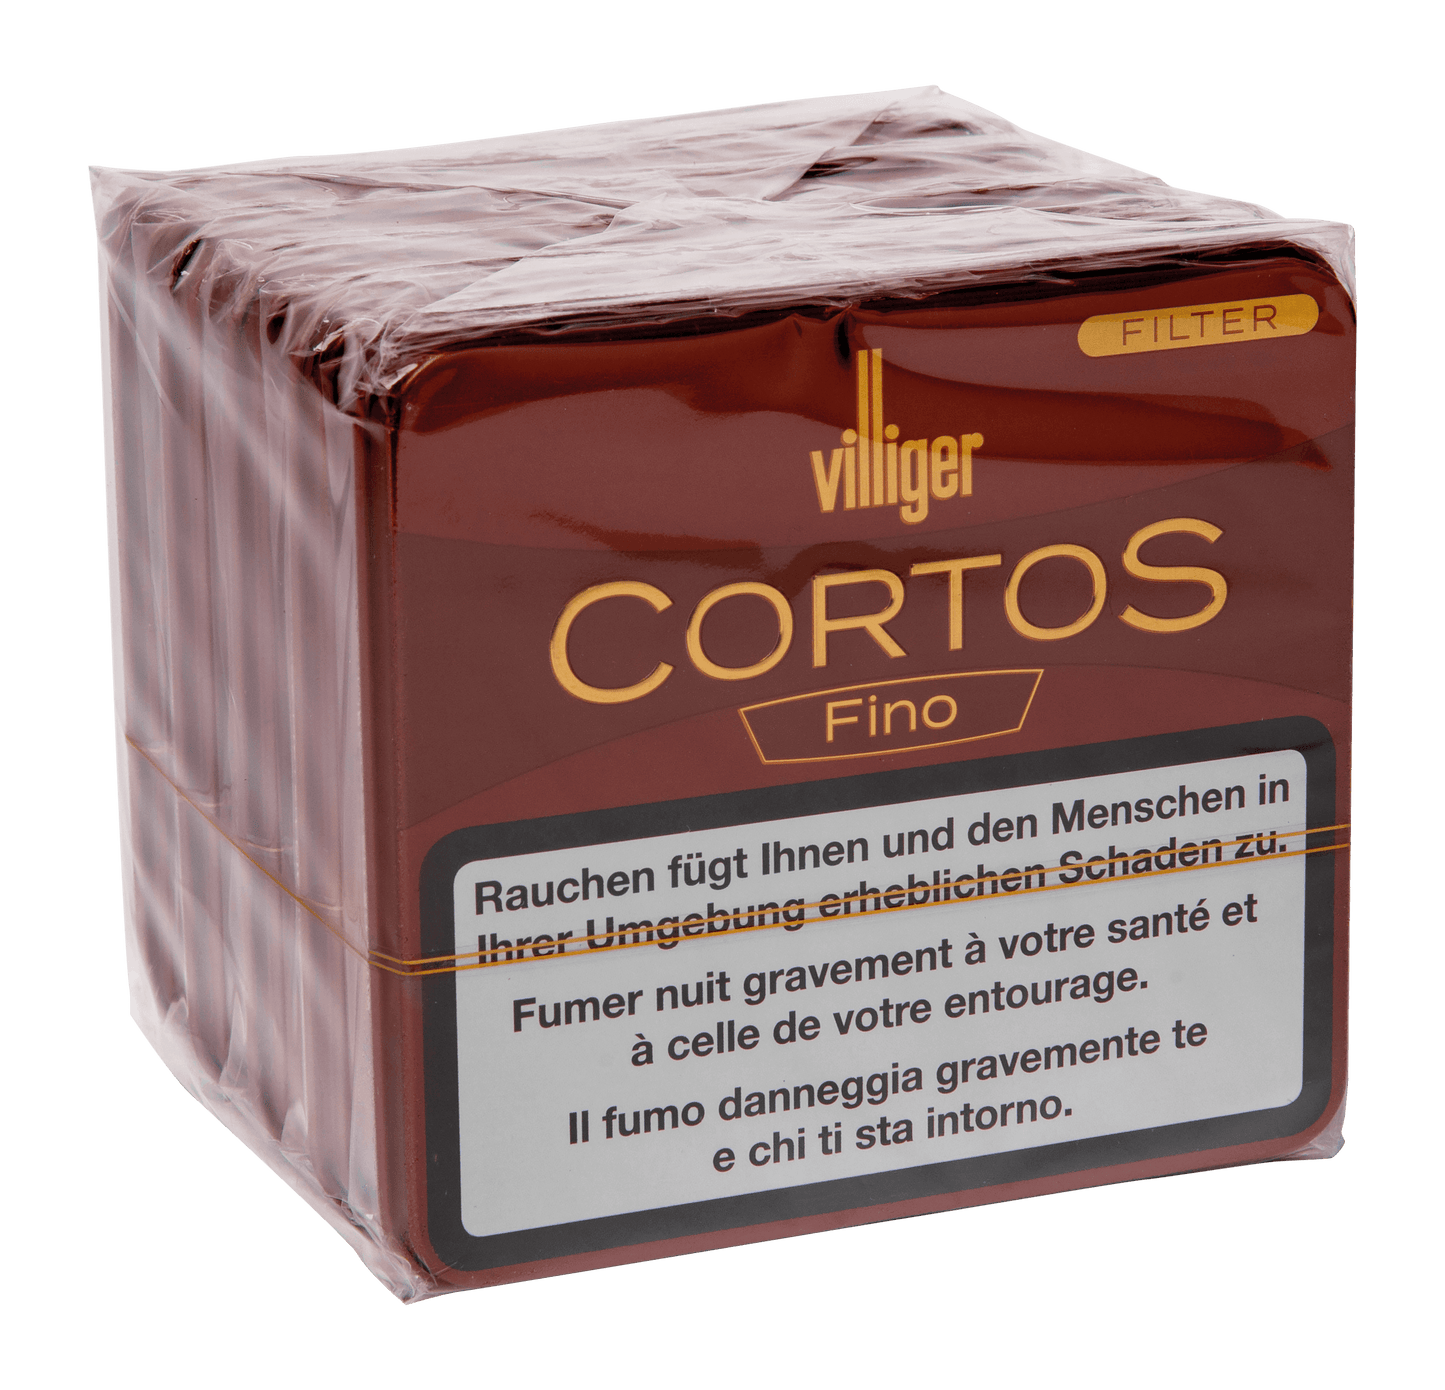 Villiger Cortos Fino Filtri 5x20